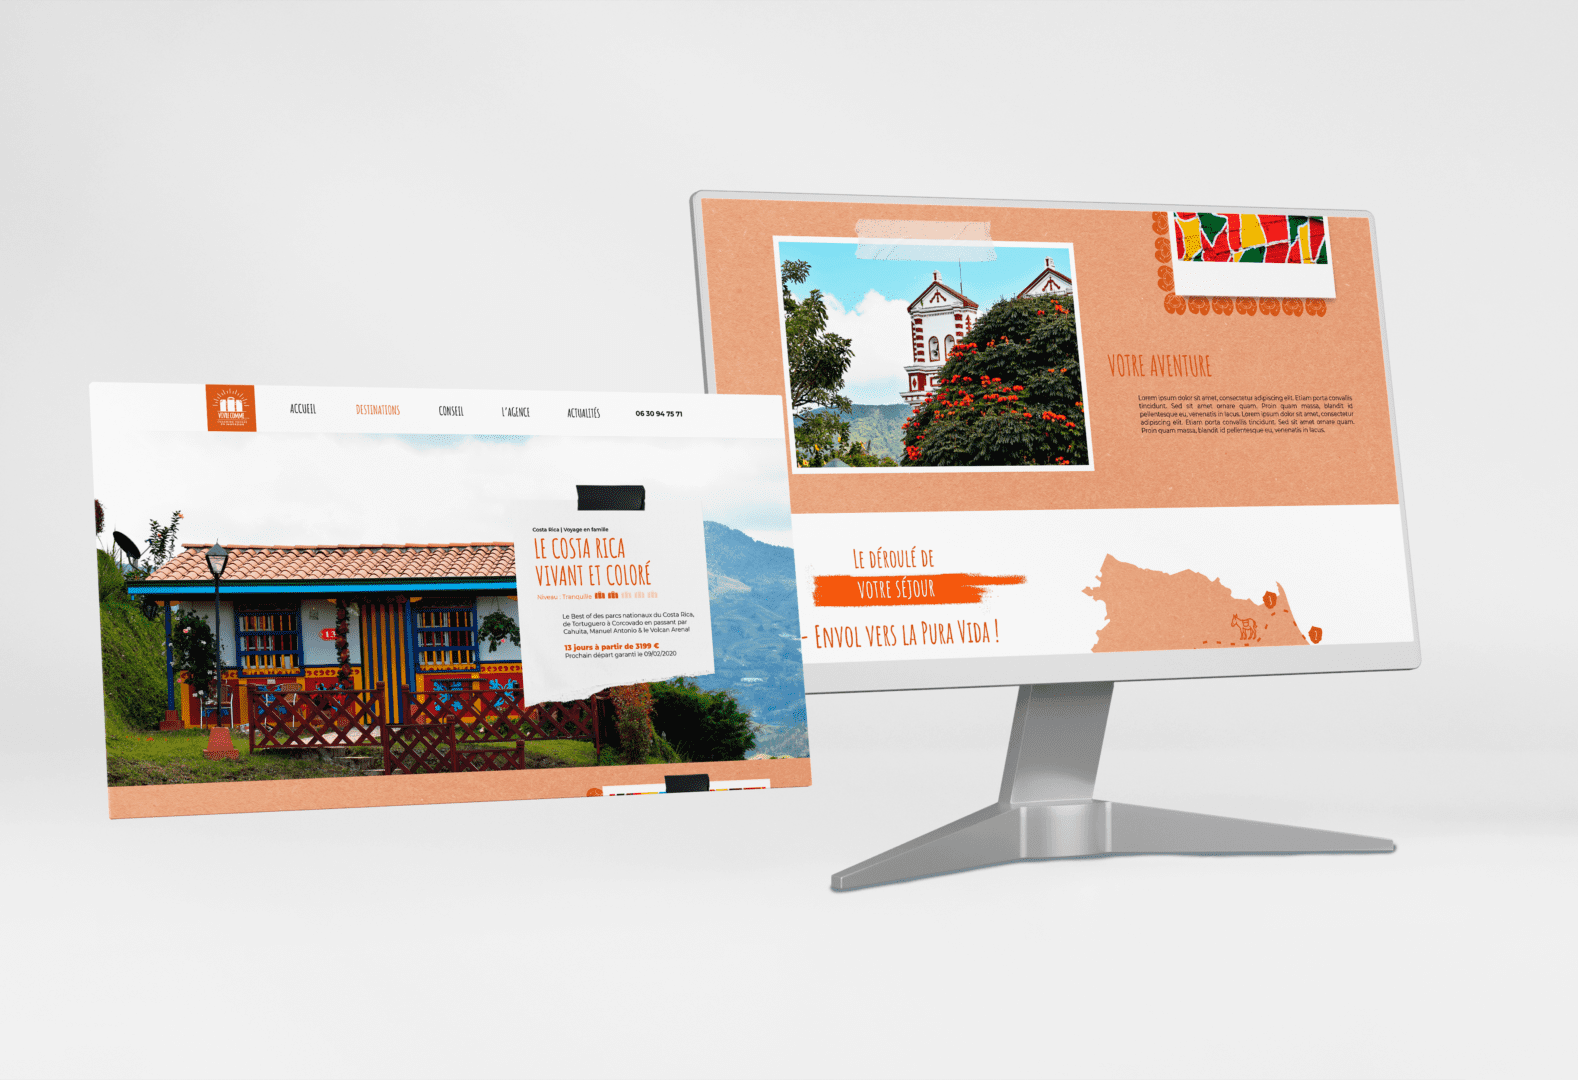 Vue ordinateur du site web de l'agence de voyage Vivre Comme. Focus sur le design de la page sur le Costa Rica